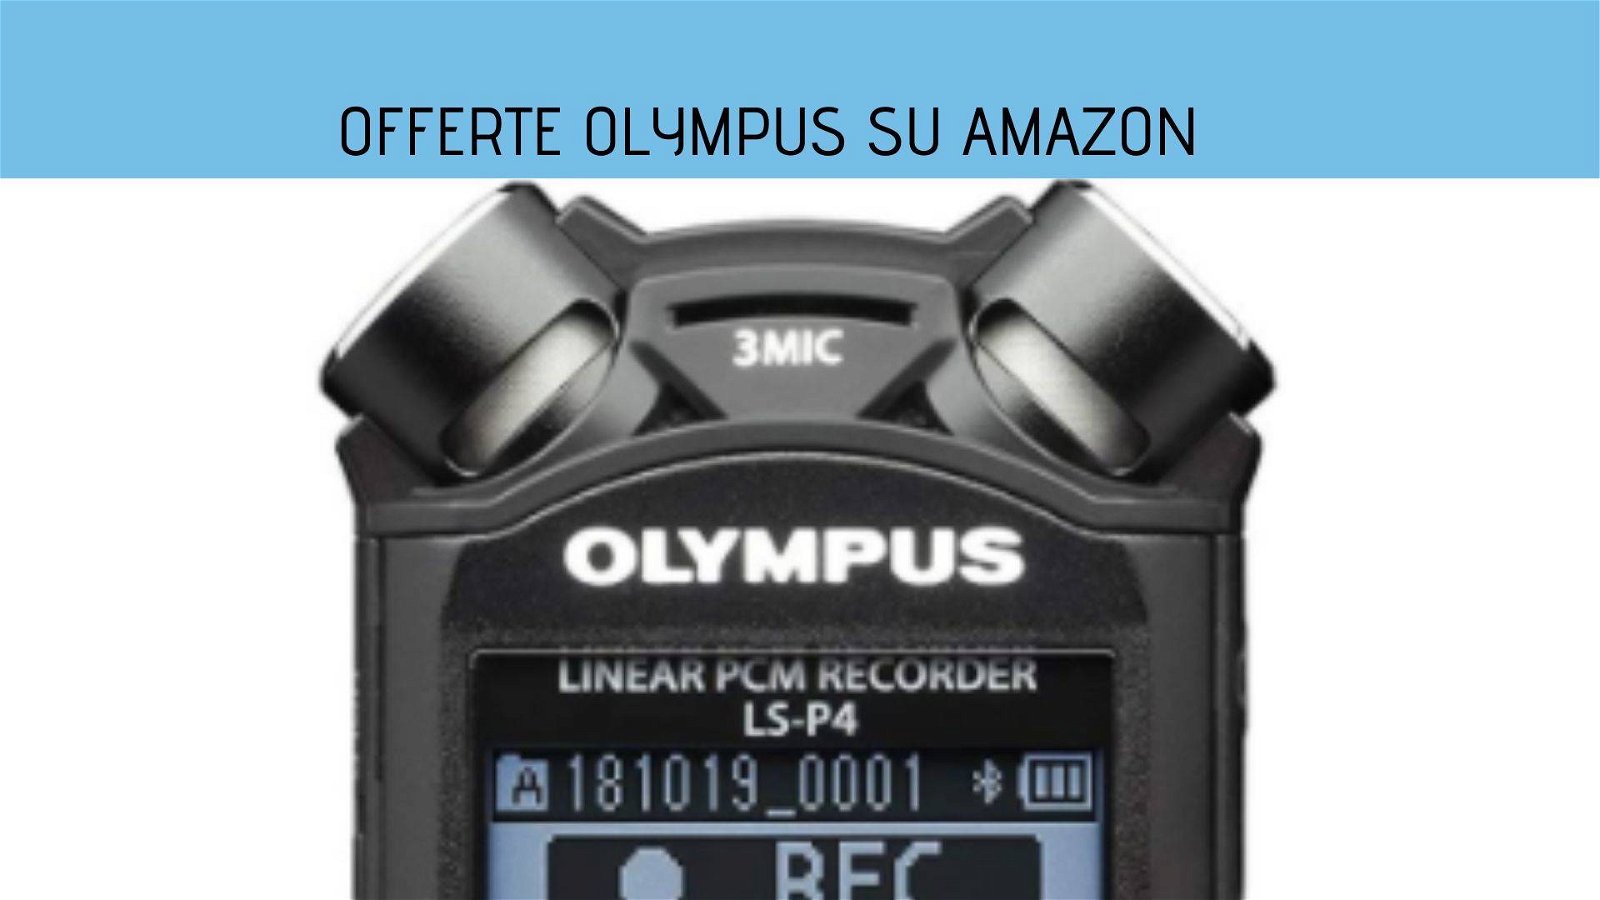 Immagine di Offerte Olympus su Amazon: sconti su registratori ed obiettivi